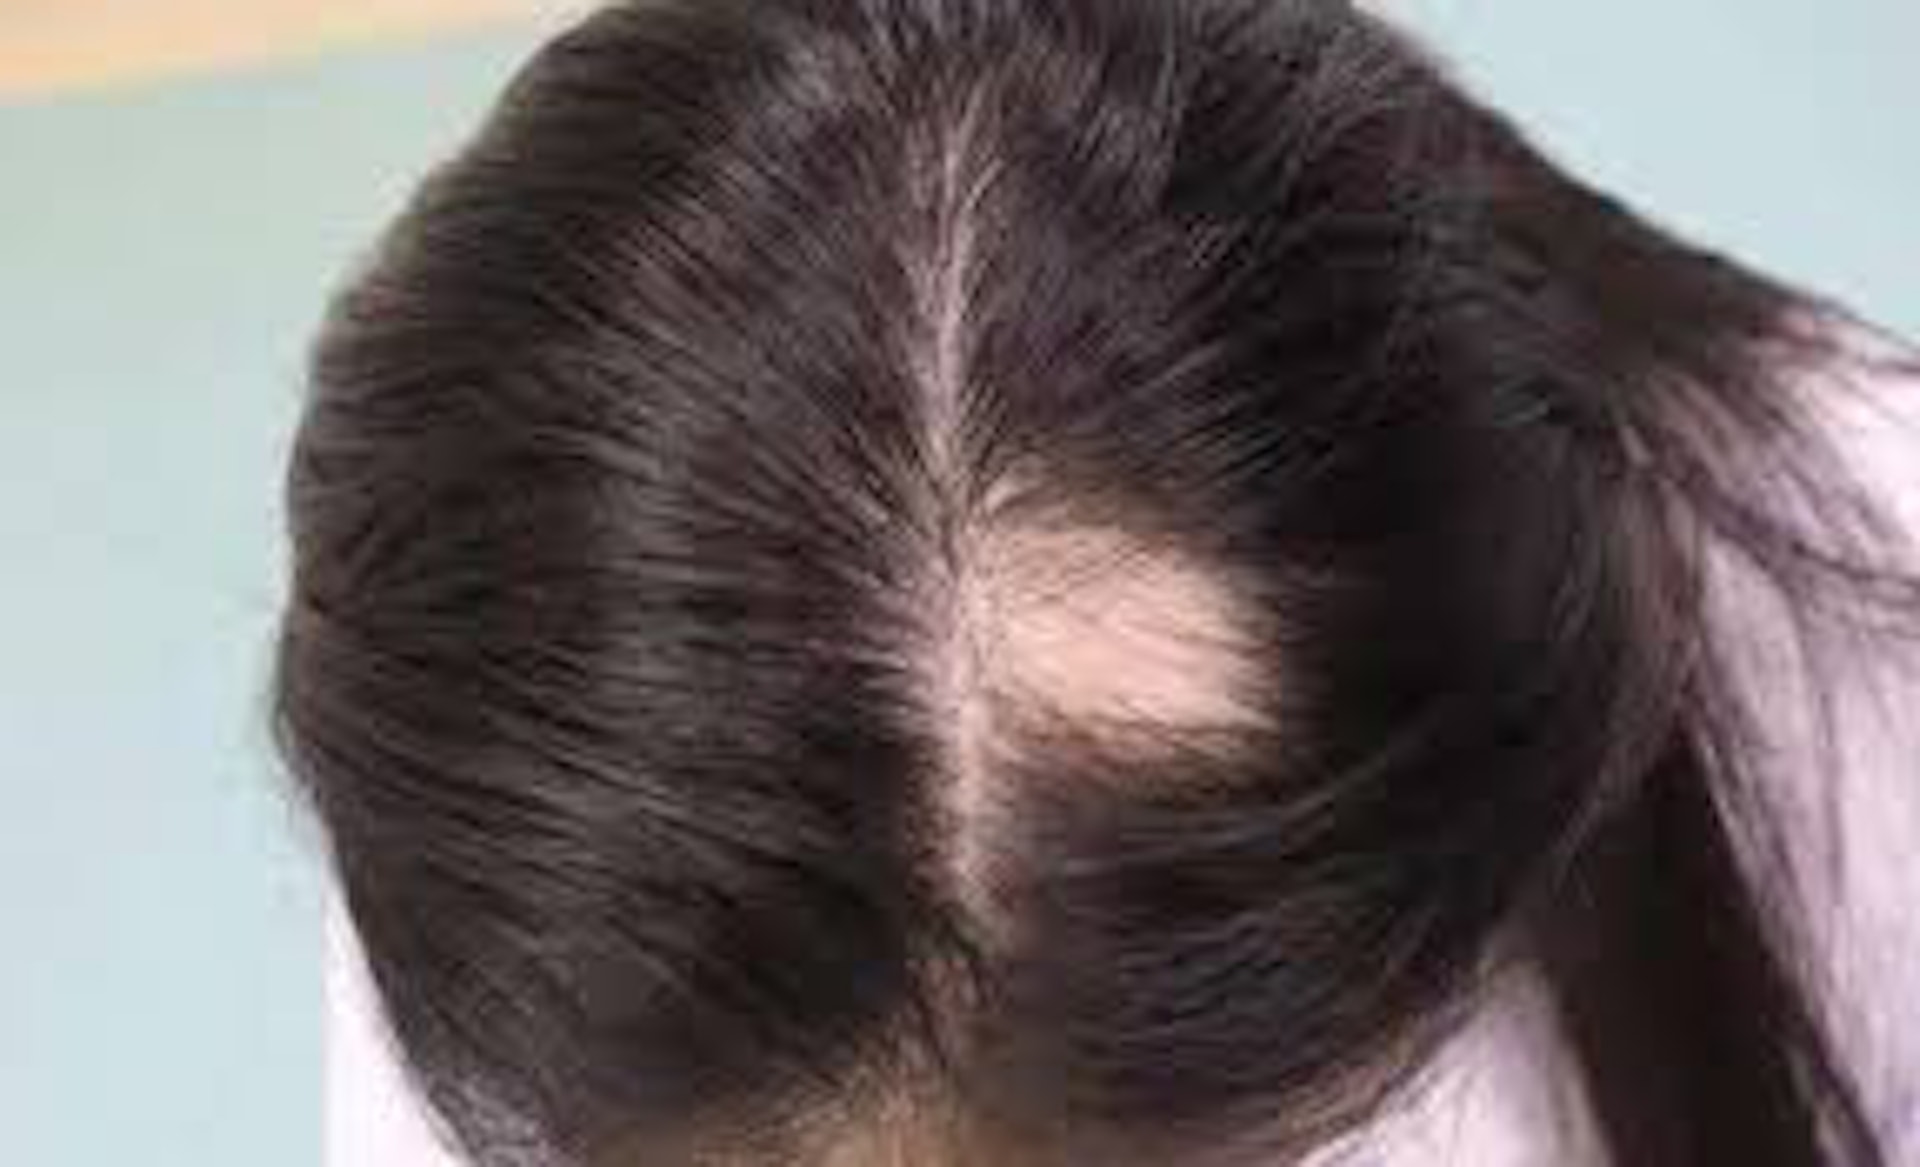 鬼剃頭在醫學上稱為「斑禿」（Alopecia），患者的頭髮突然間會局部性出現一個如5蚊硬幣般大小的禿頂情況，有部分患者甚至在眼睫毛及眉毛位置亦會出現脫髮情況。（網上圖片）